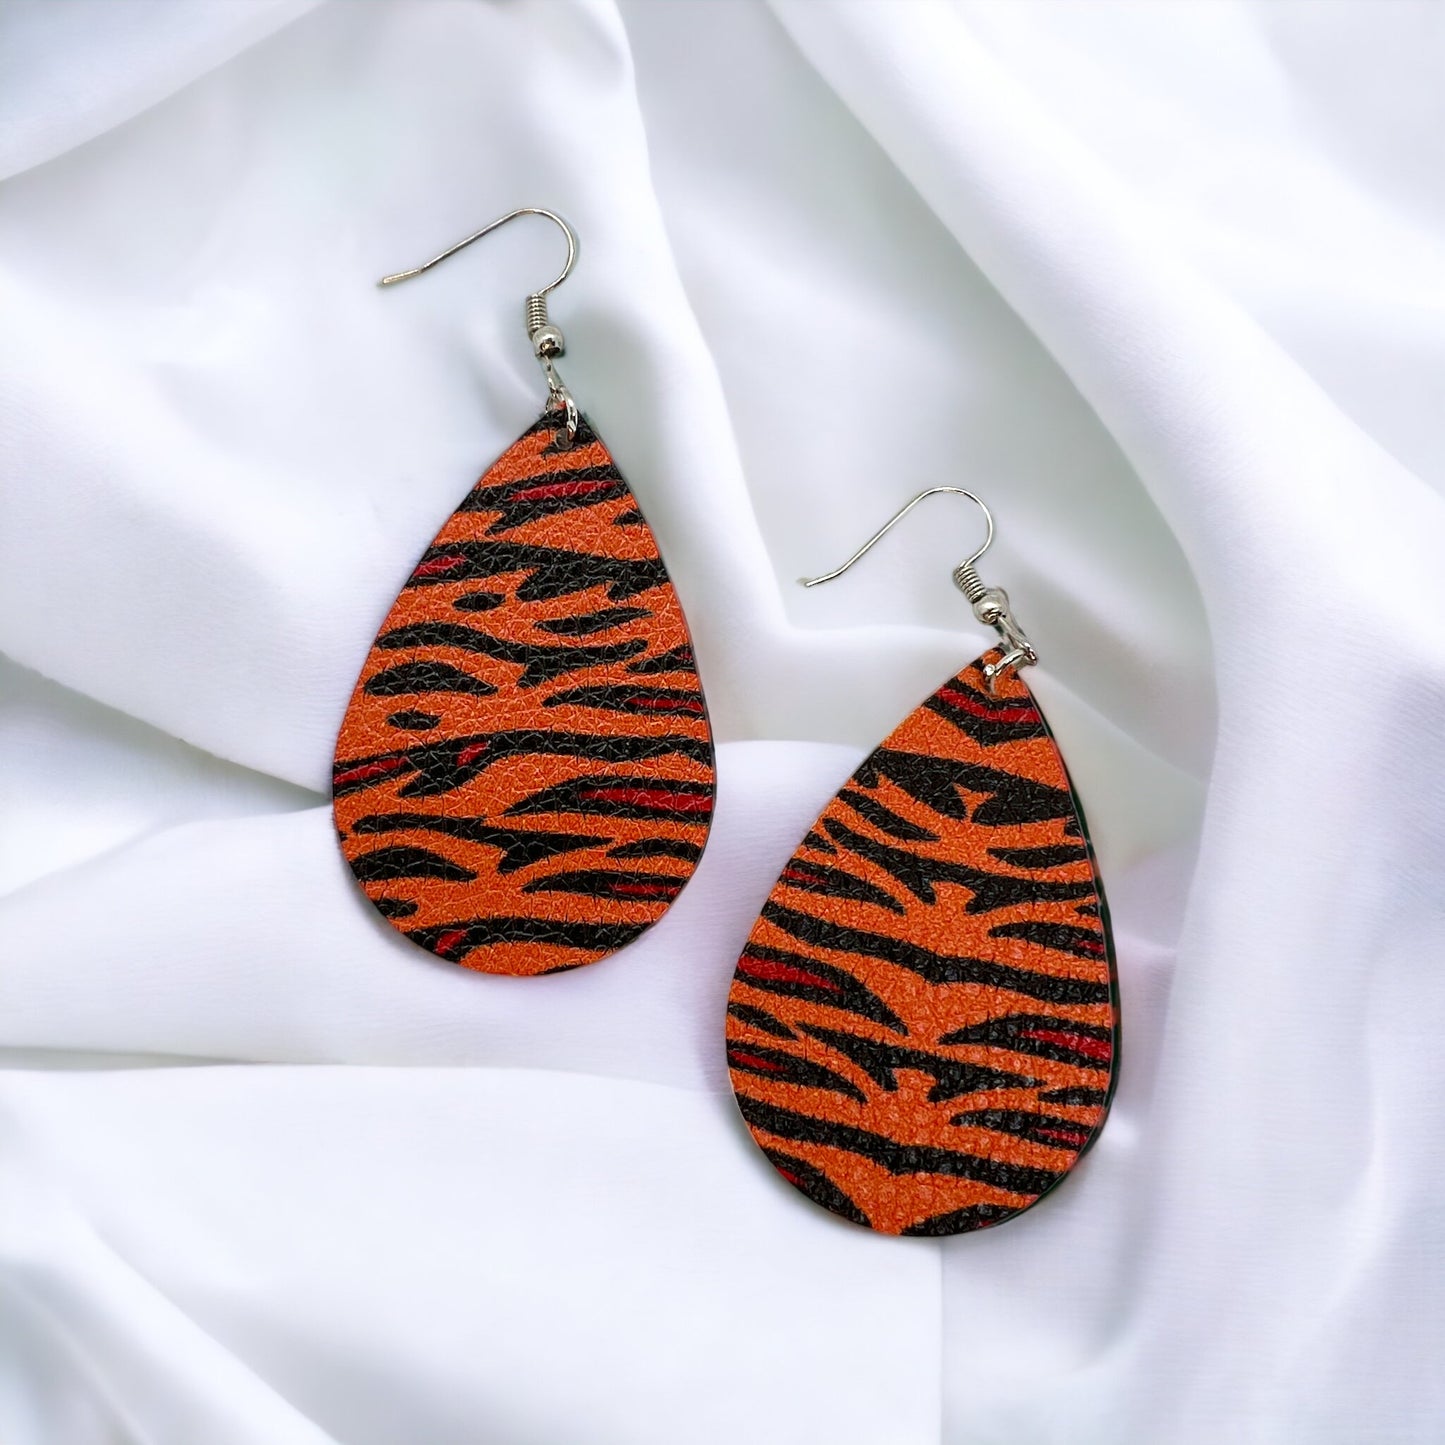 Tiger Earrings - Tigers Earrings, Handmade Jewelry, Tiger Jewelry, Bengals Jewelry, Tiger Earrings, Tigers Earrings, Bengal Tiger, Football